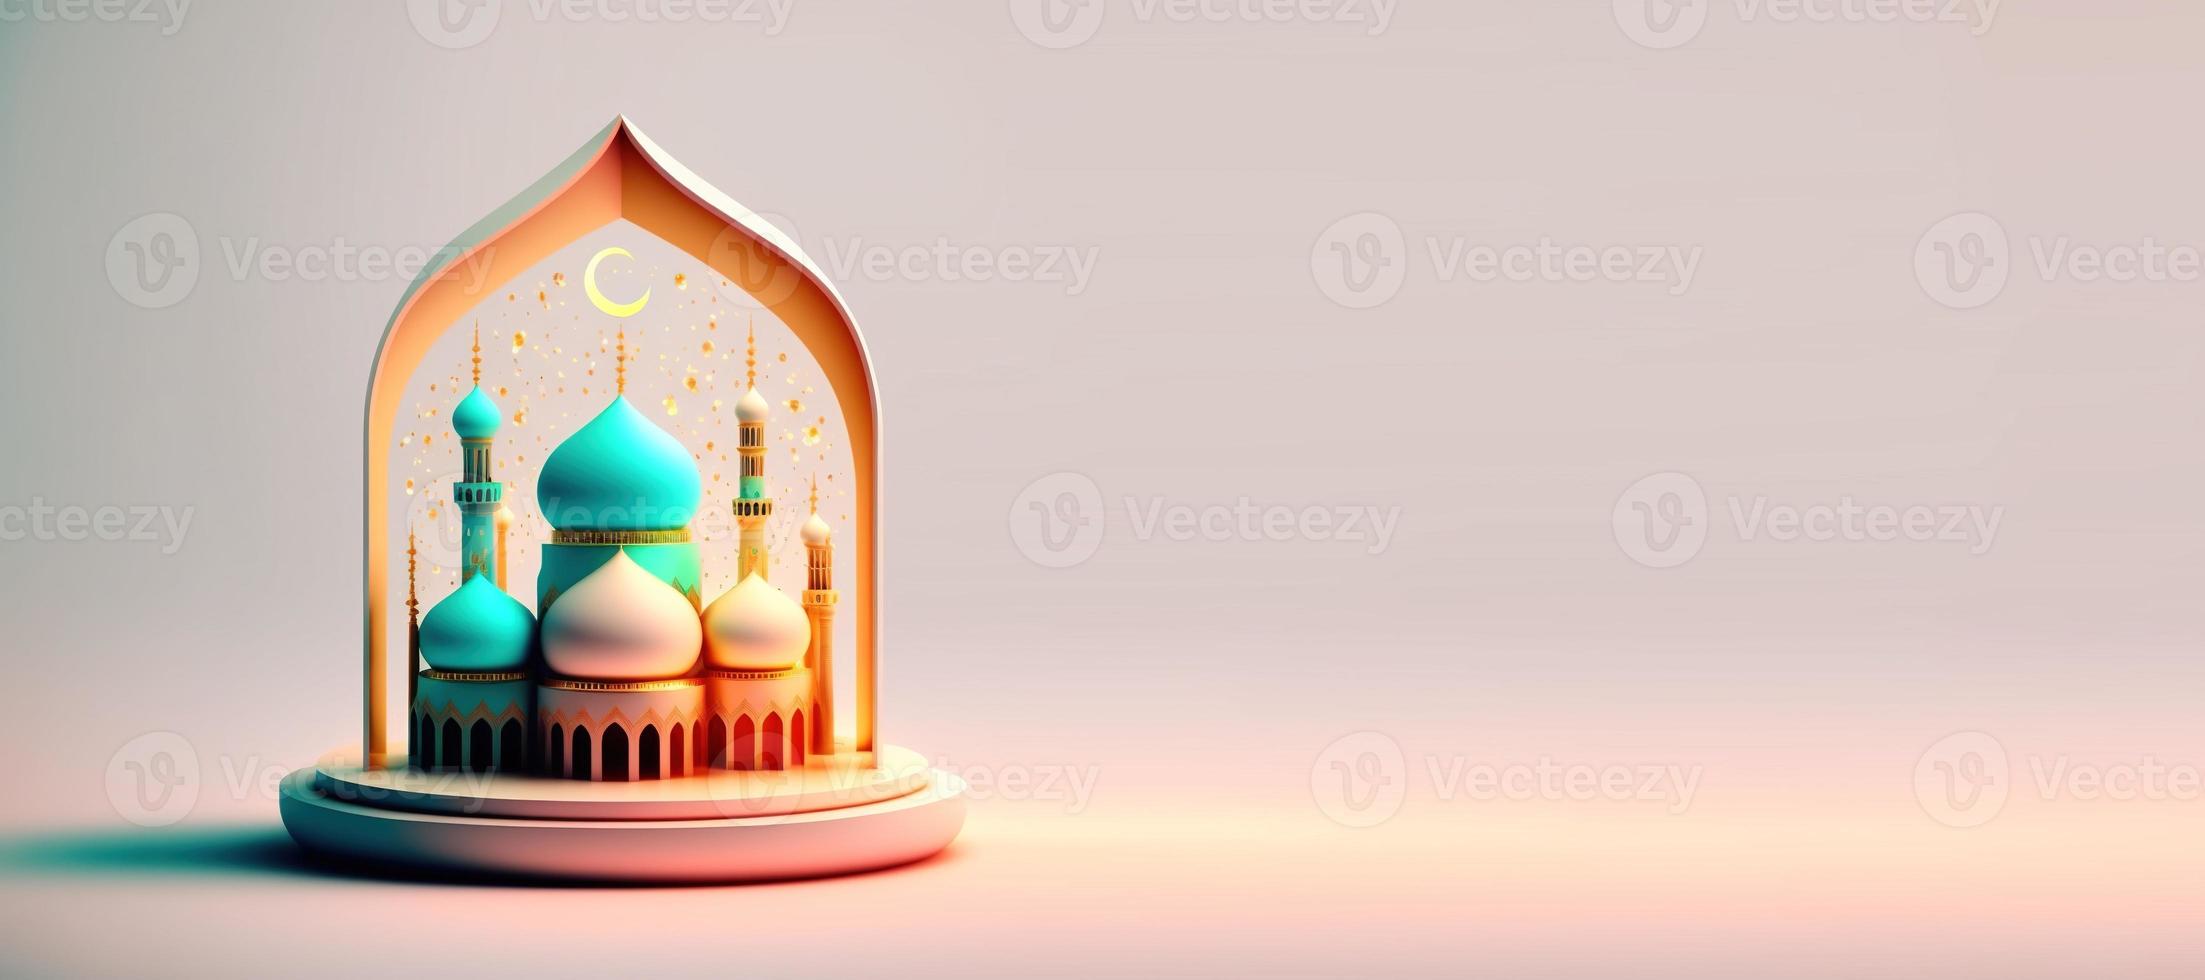 ilustración de la mezquita para el fondo de celebración islámica de eid ramadan con espacio vacío foto